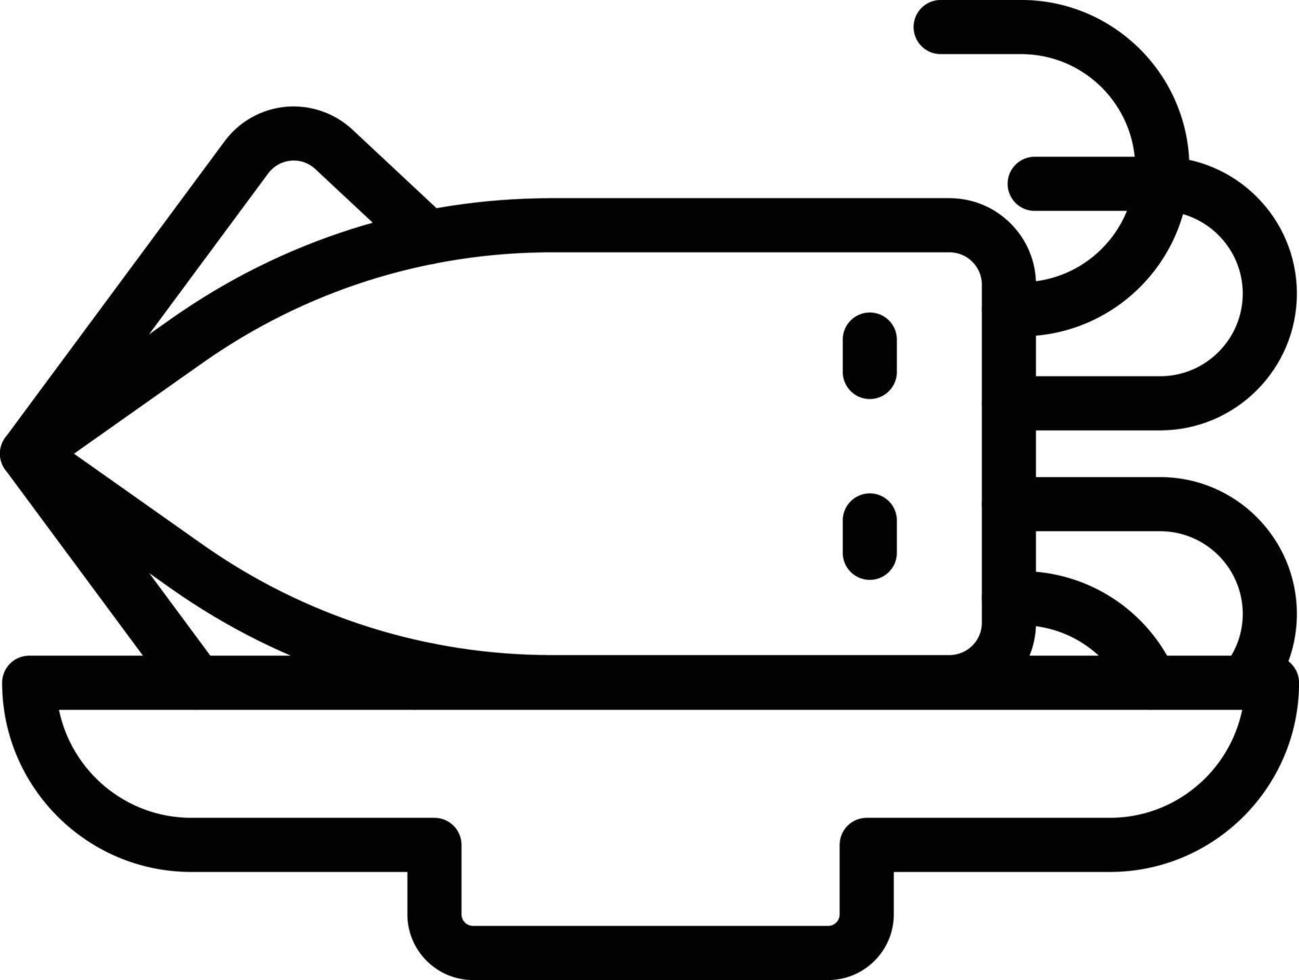 illustrazione vettoriale di calamari su uno sfondo simboli di qualità premium. icone vettoriali per il concetto e la progettazione grafica.